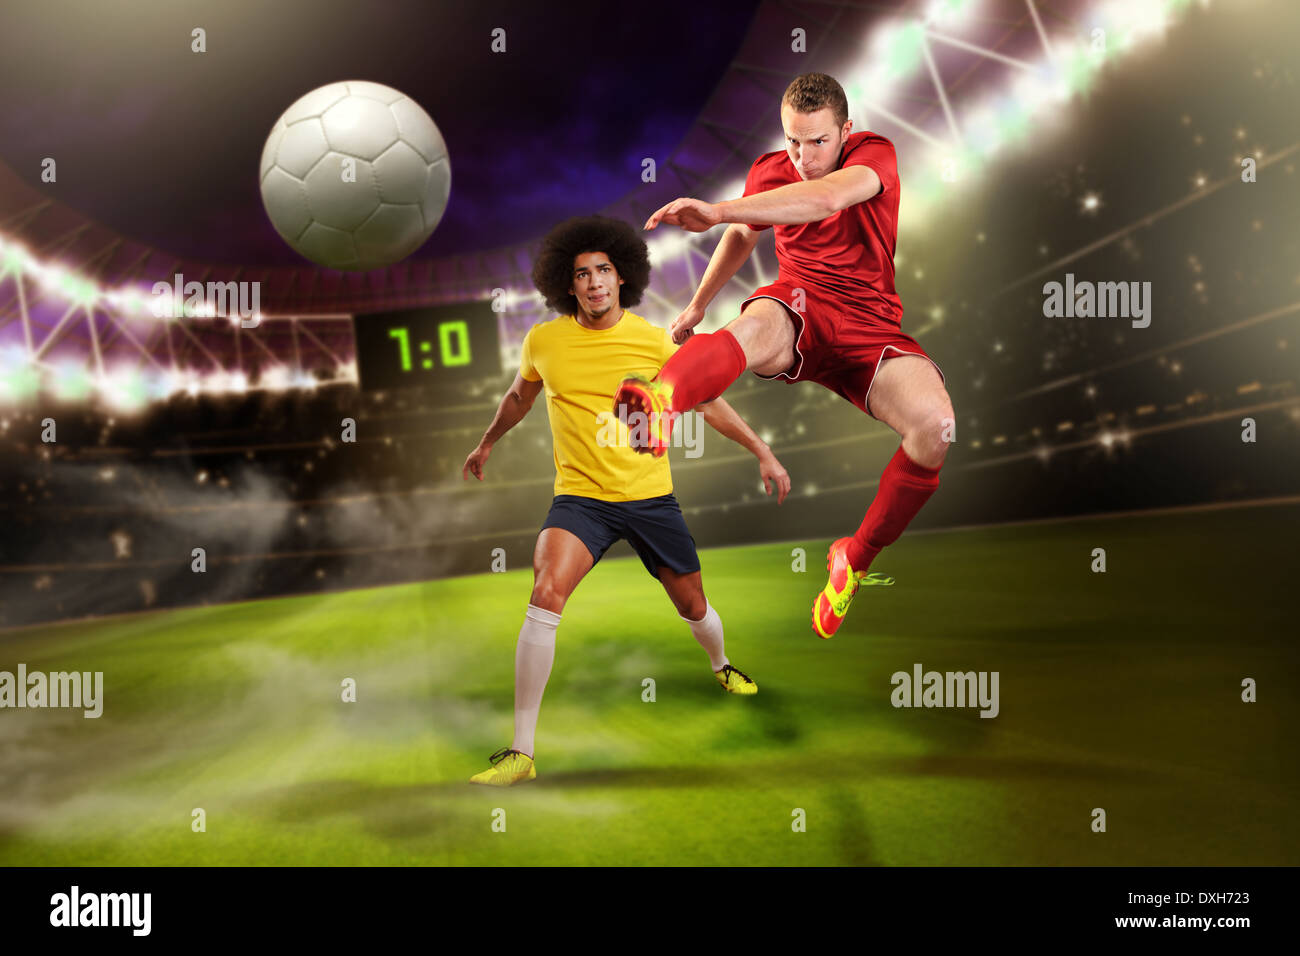 männlichen Fußball oder Fußball Spieler auf dem Feld Stockfoto